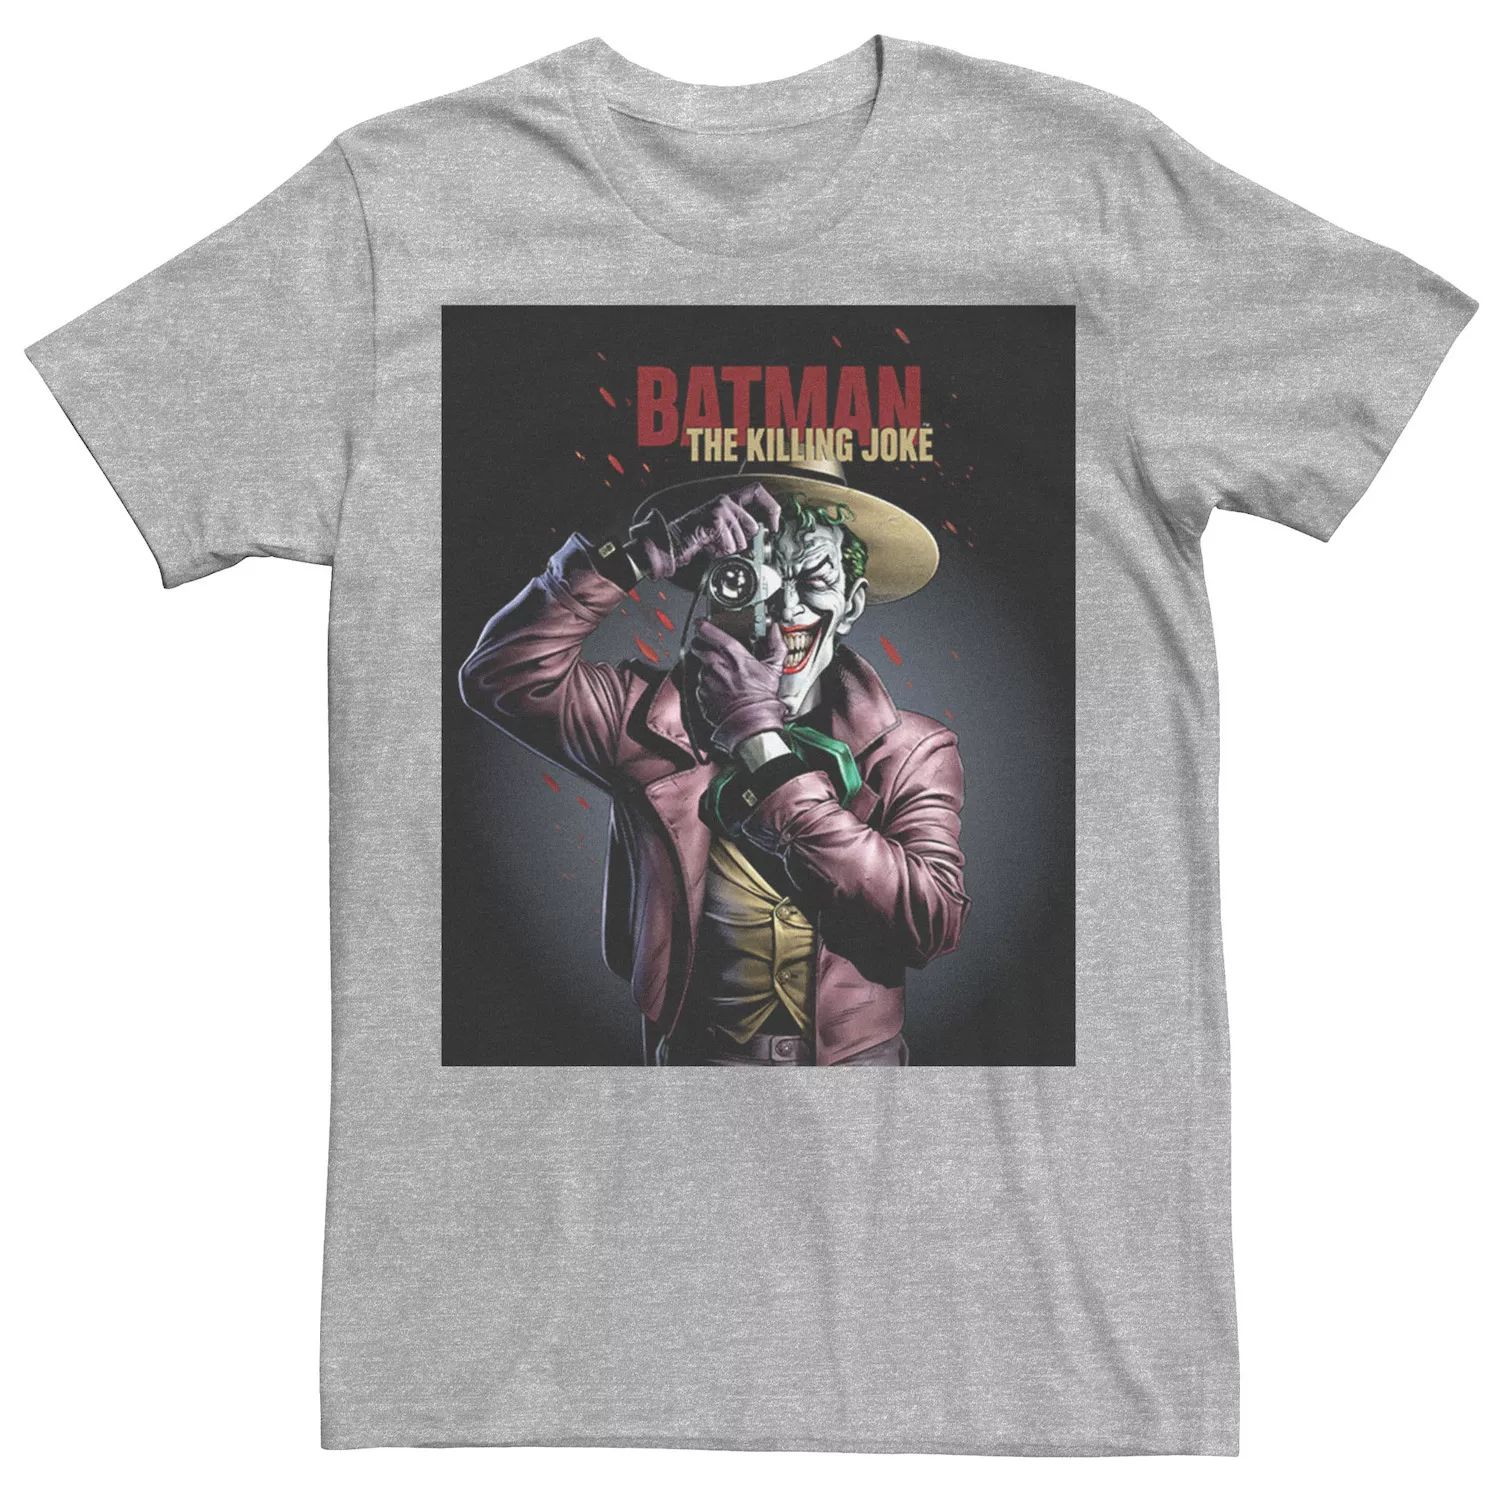 Мужская футболка с плакатом Batman The Killing Joke Joker DC Comics мужская футболка batman the killing joke dc comics